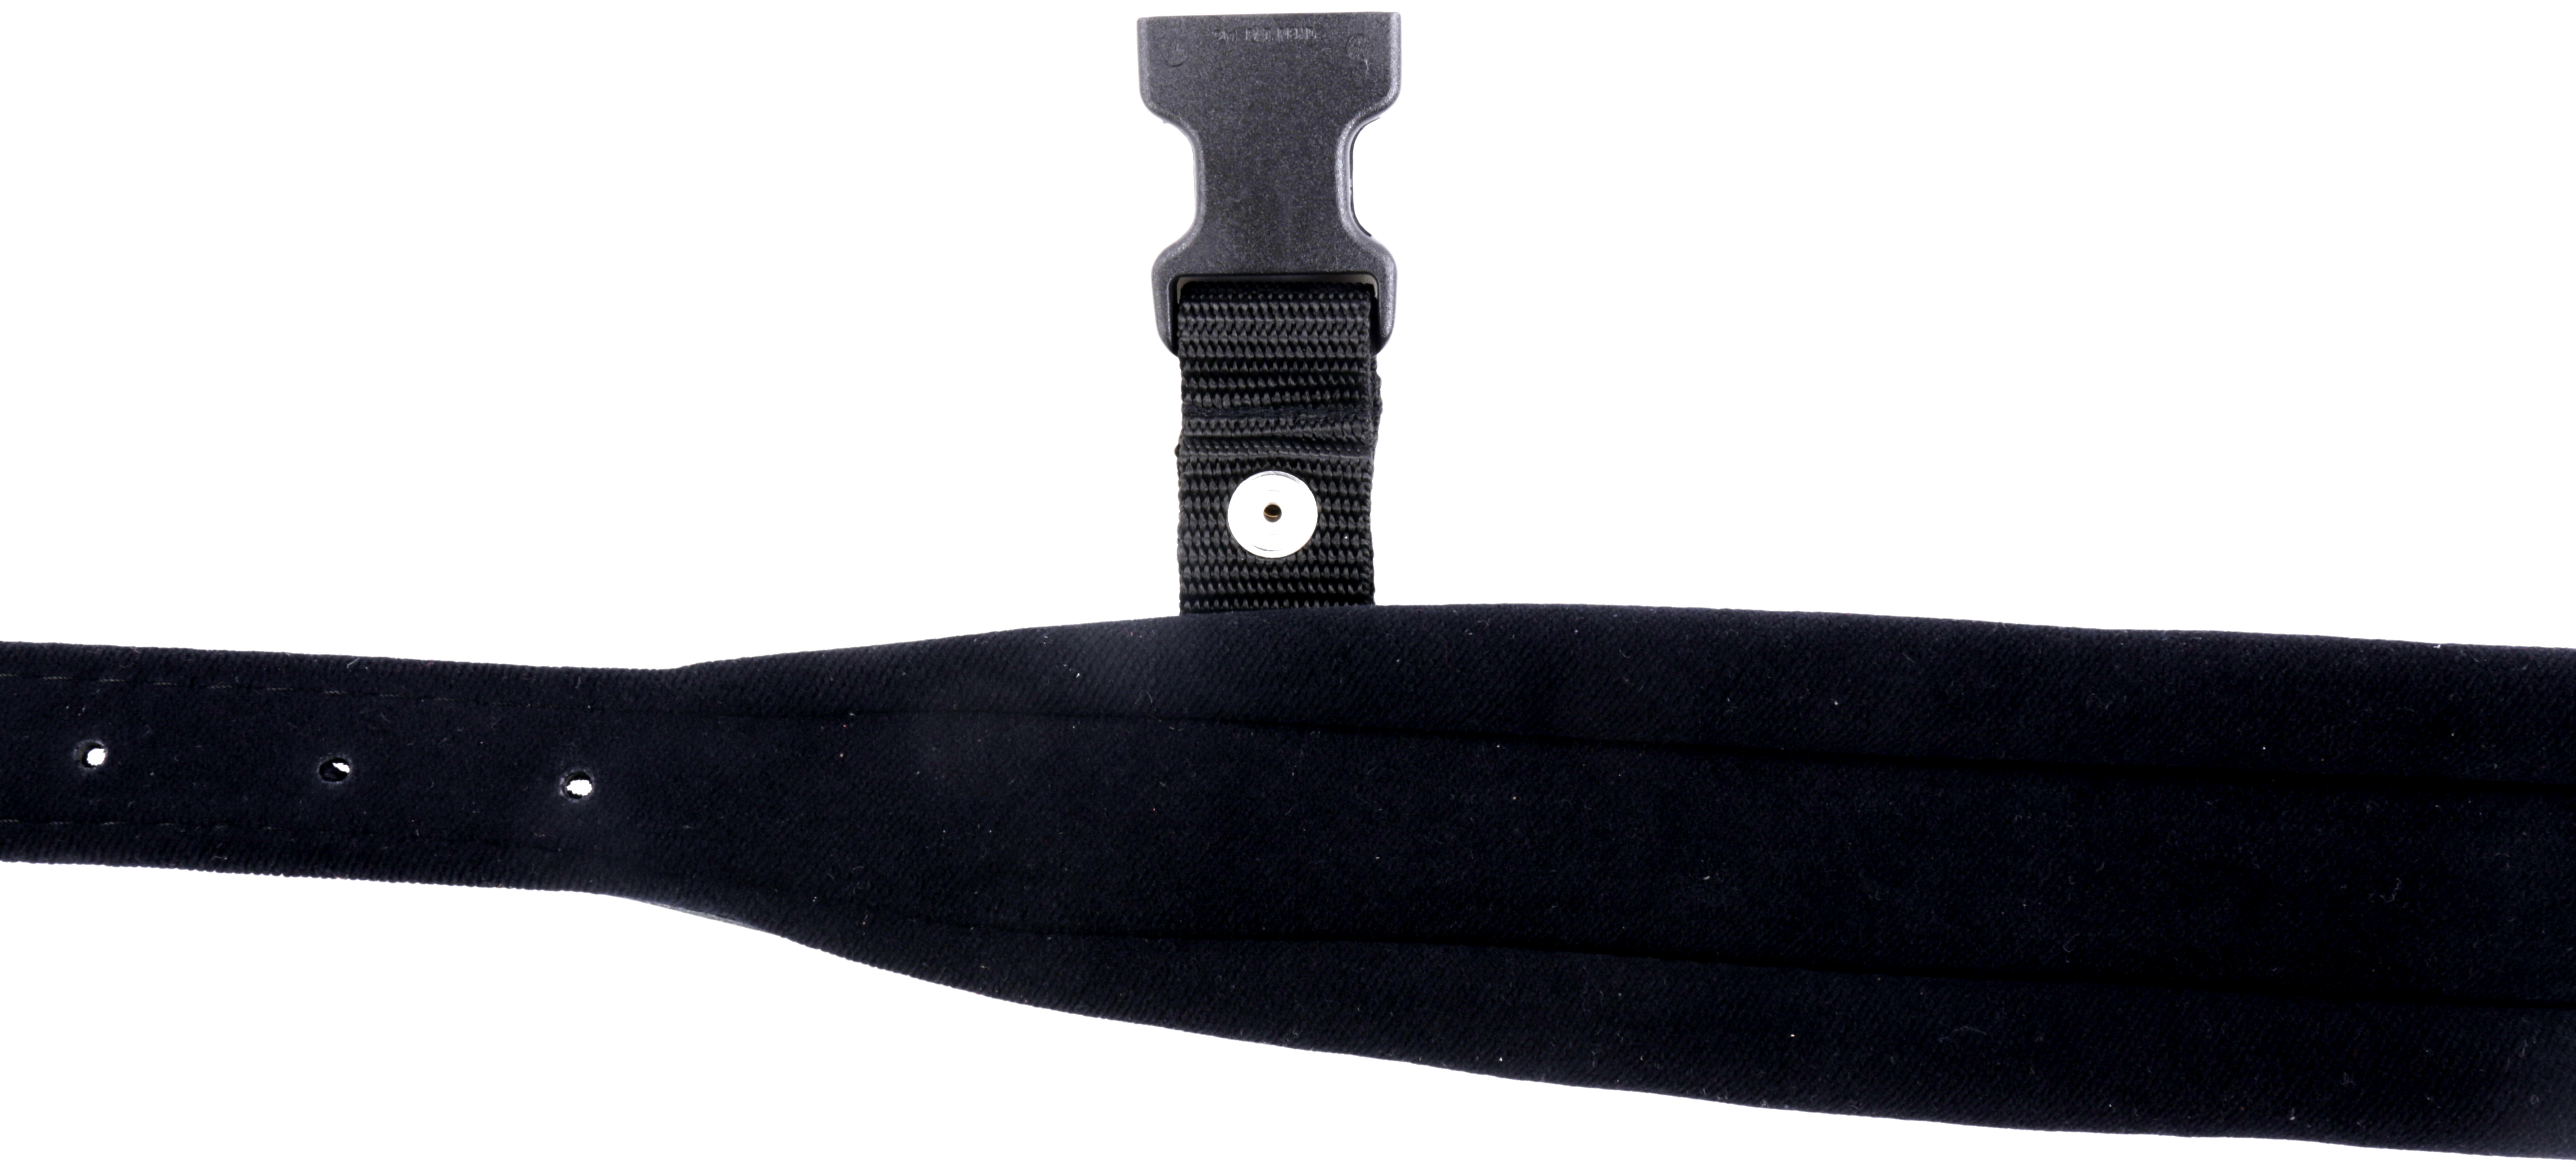 Akkordeon Trageriemen  Rindleder schwarz mit Schlaufe Rindleder und Samtpolster schwarz 7,5cm Breit.